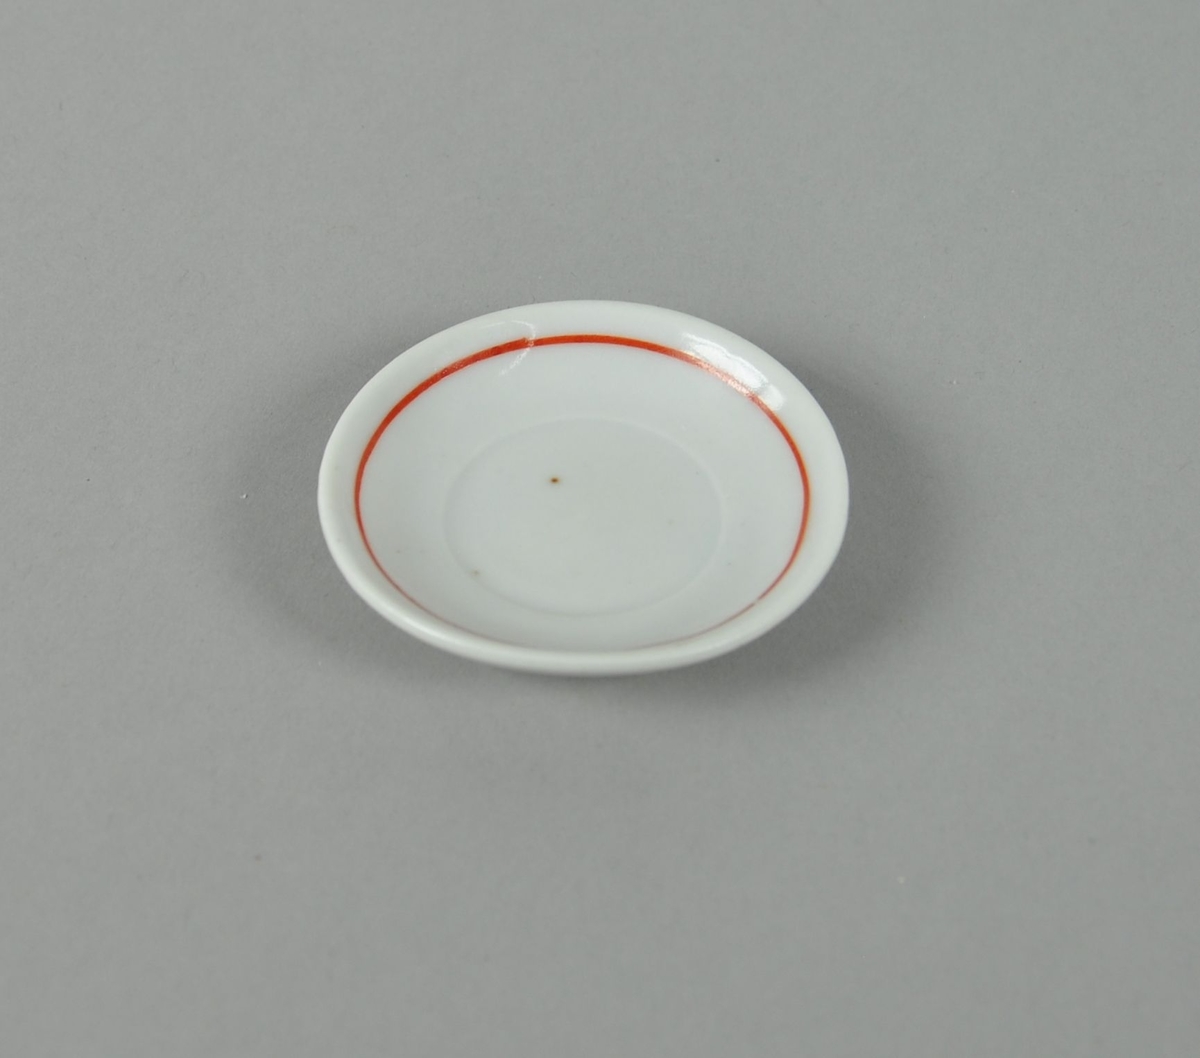 Skål av glassert keramikk. Hvit farge, med dekorativ ring i rødt.